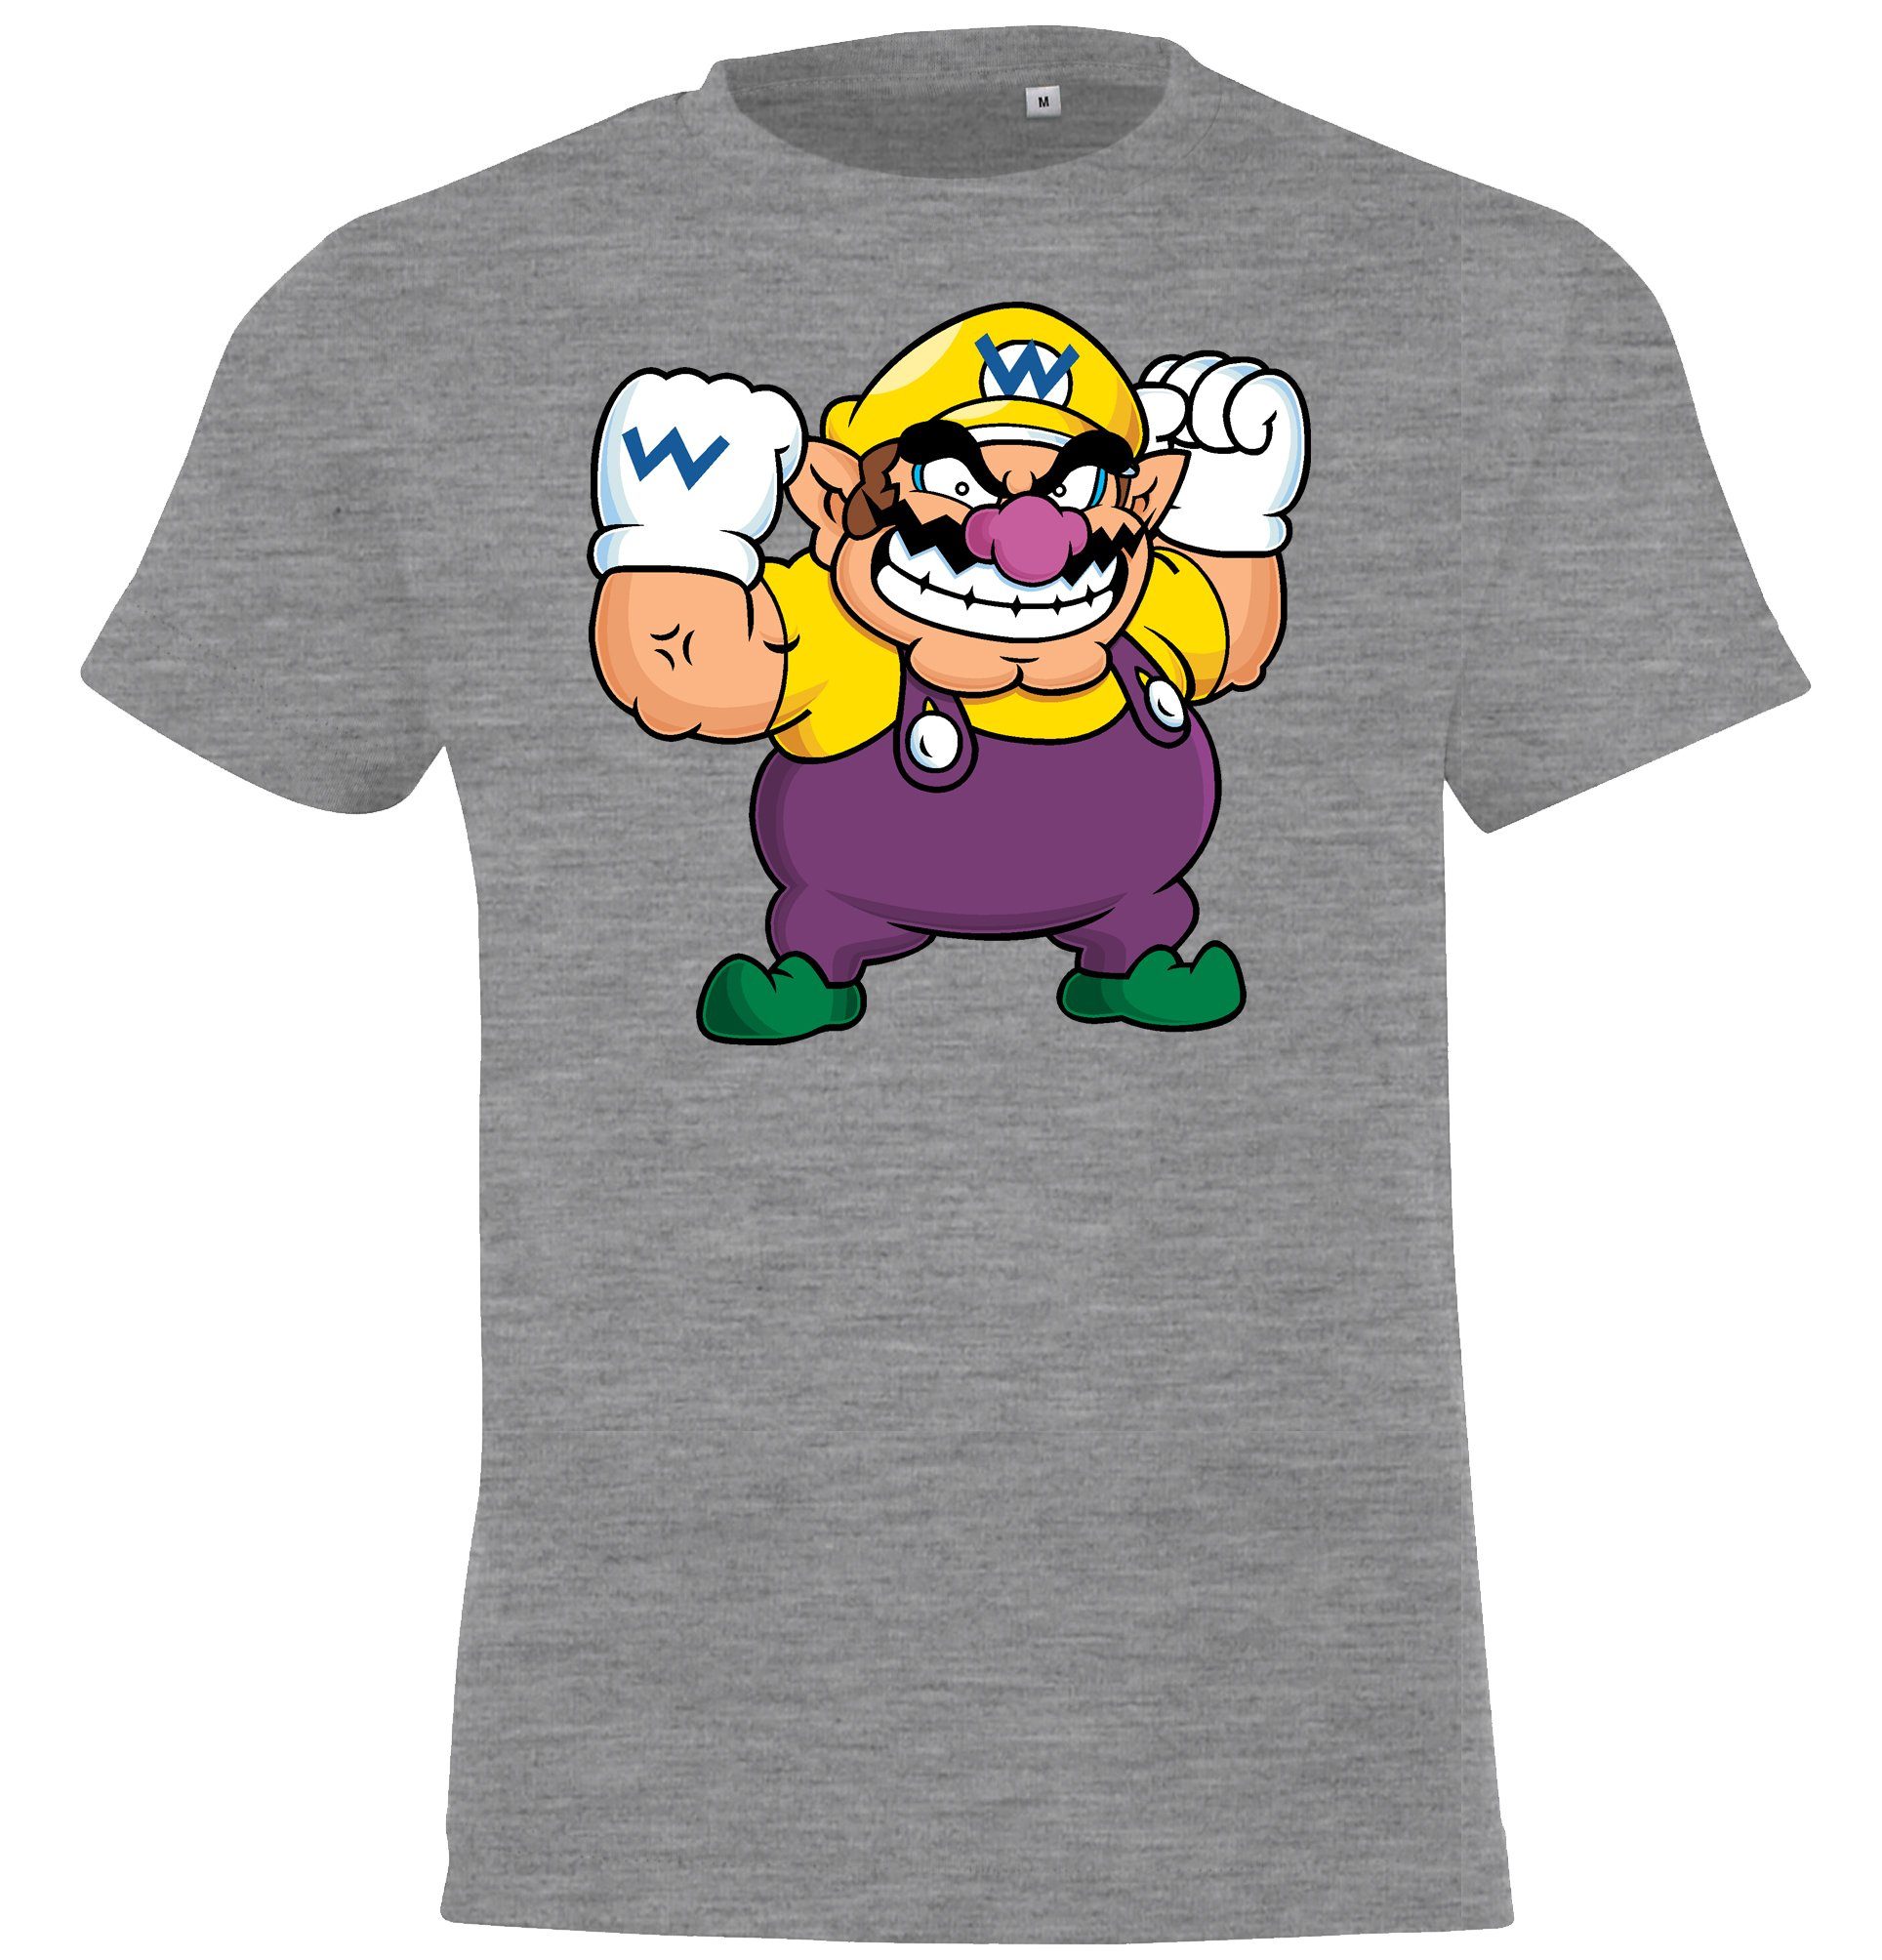 Youth Designz T-Shirt »Wario Kinder Shirt für Jungen und Mädchen« mit  modischem Gaming Frontprint